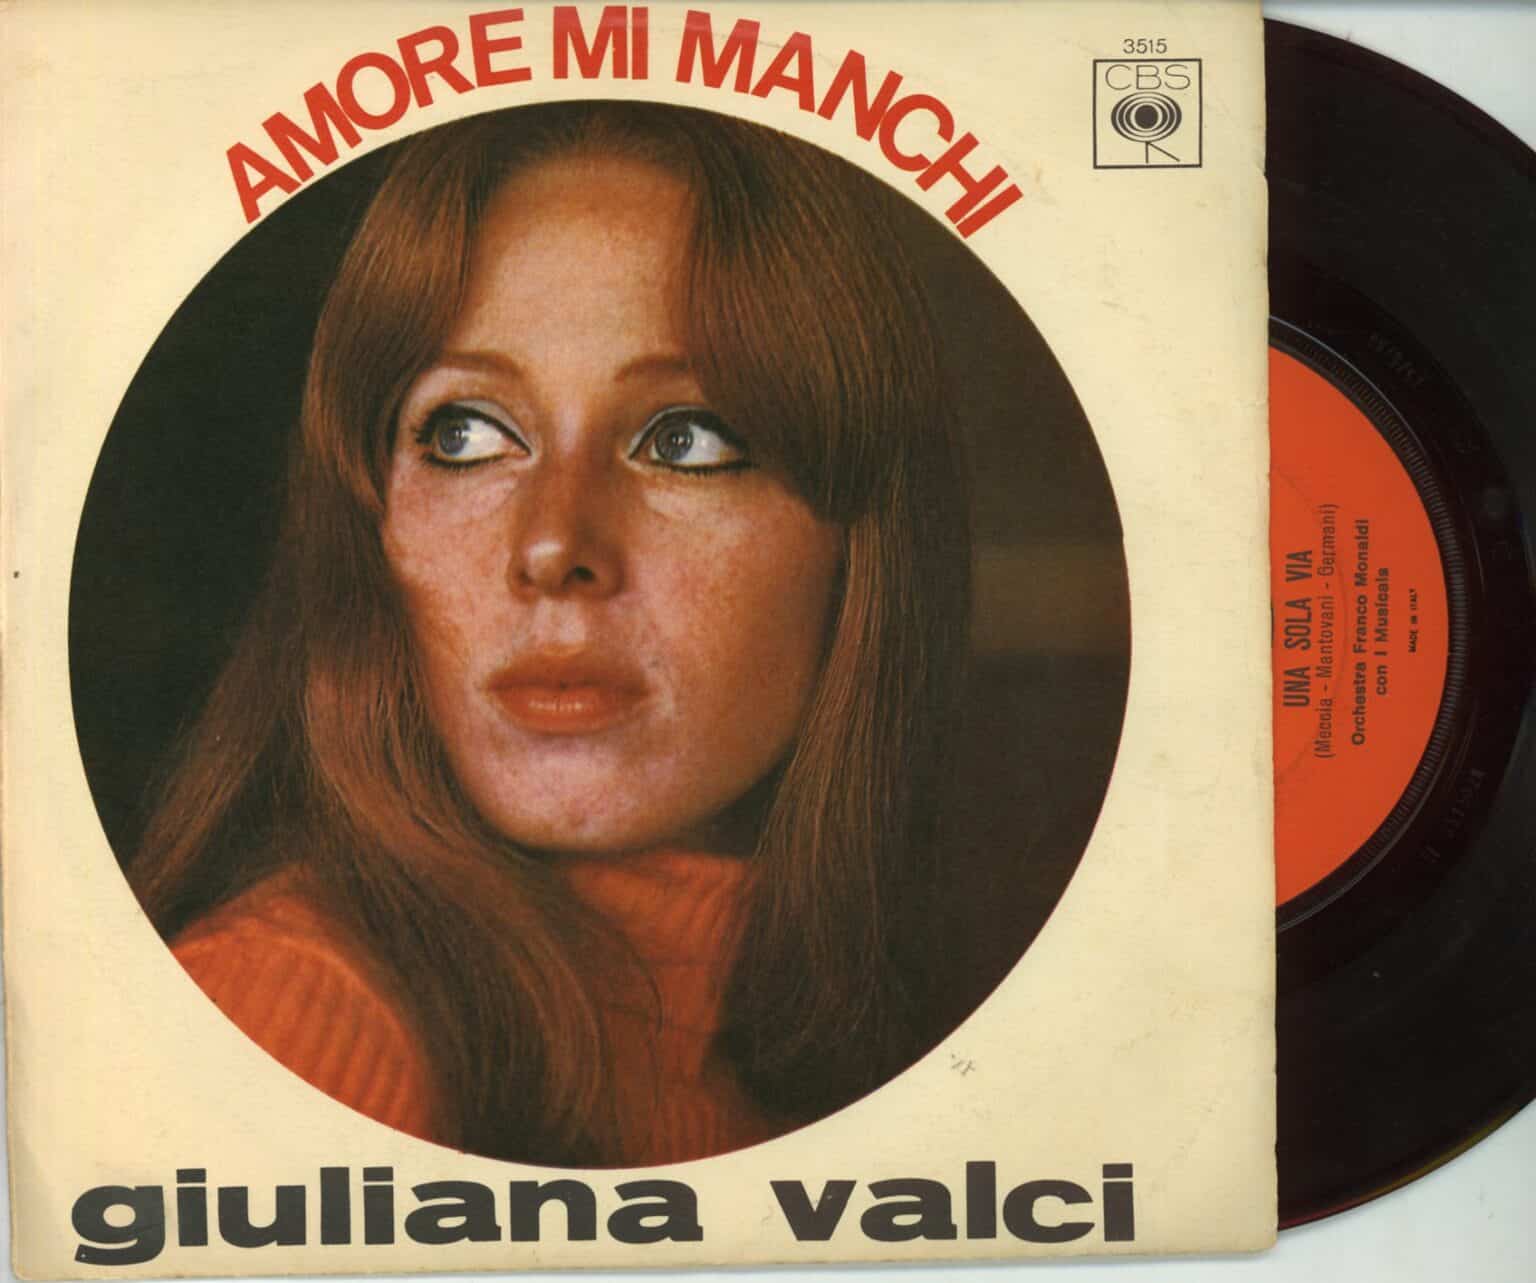 Vinile 45 giri – Giuliana Valci: Amore mi manchi / Una sola via Hi-Fi e Vinili